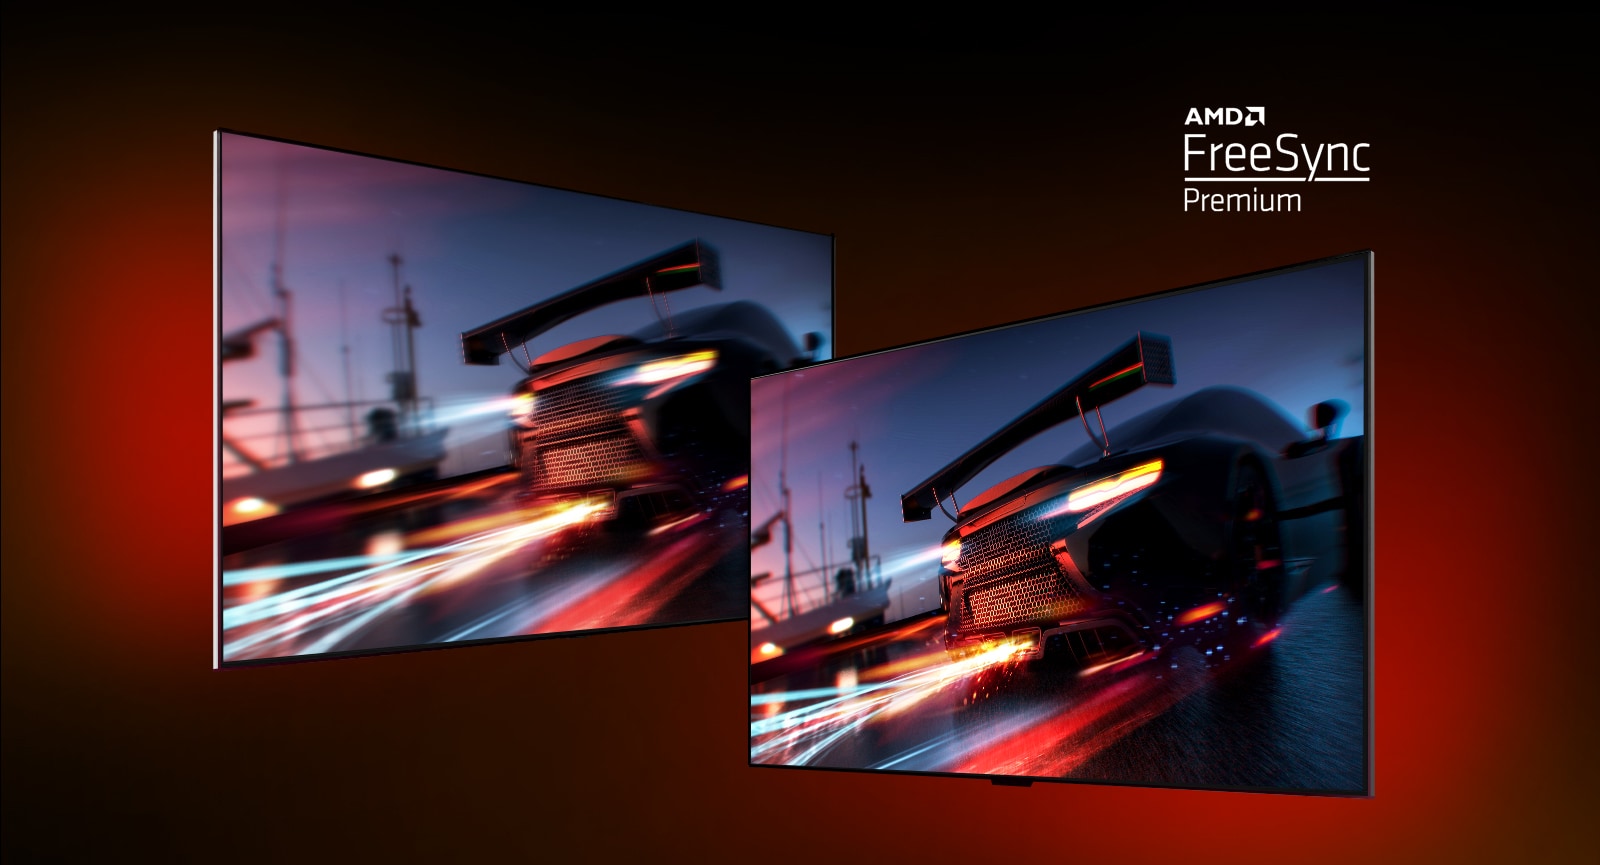 Dva televizorja sta - na levi je prizor iz videoigre FORTNITE z dirkalnikom. Na desni je prikazan tudi prizor iz video igre, vendar v svetlejši in jasnejši sliki. V zgornjem desnem kotu je prikazan logotip AMD FreeSync Premium. 